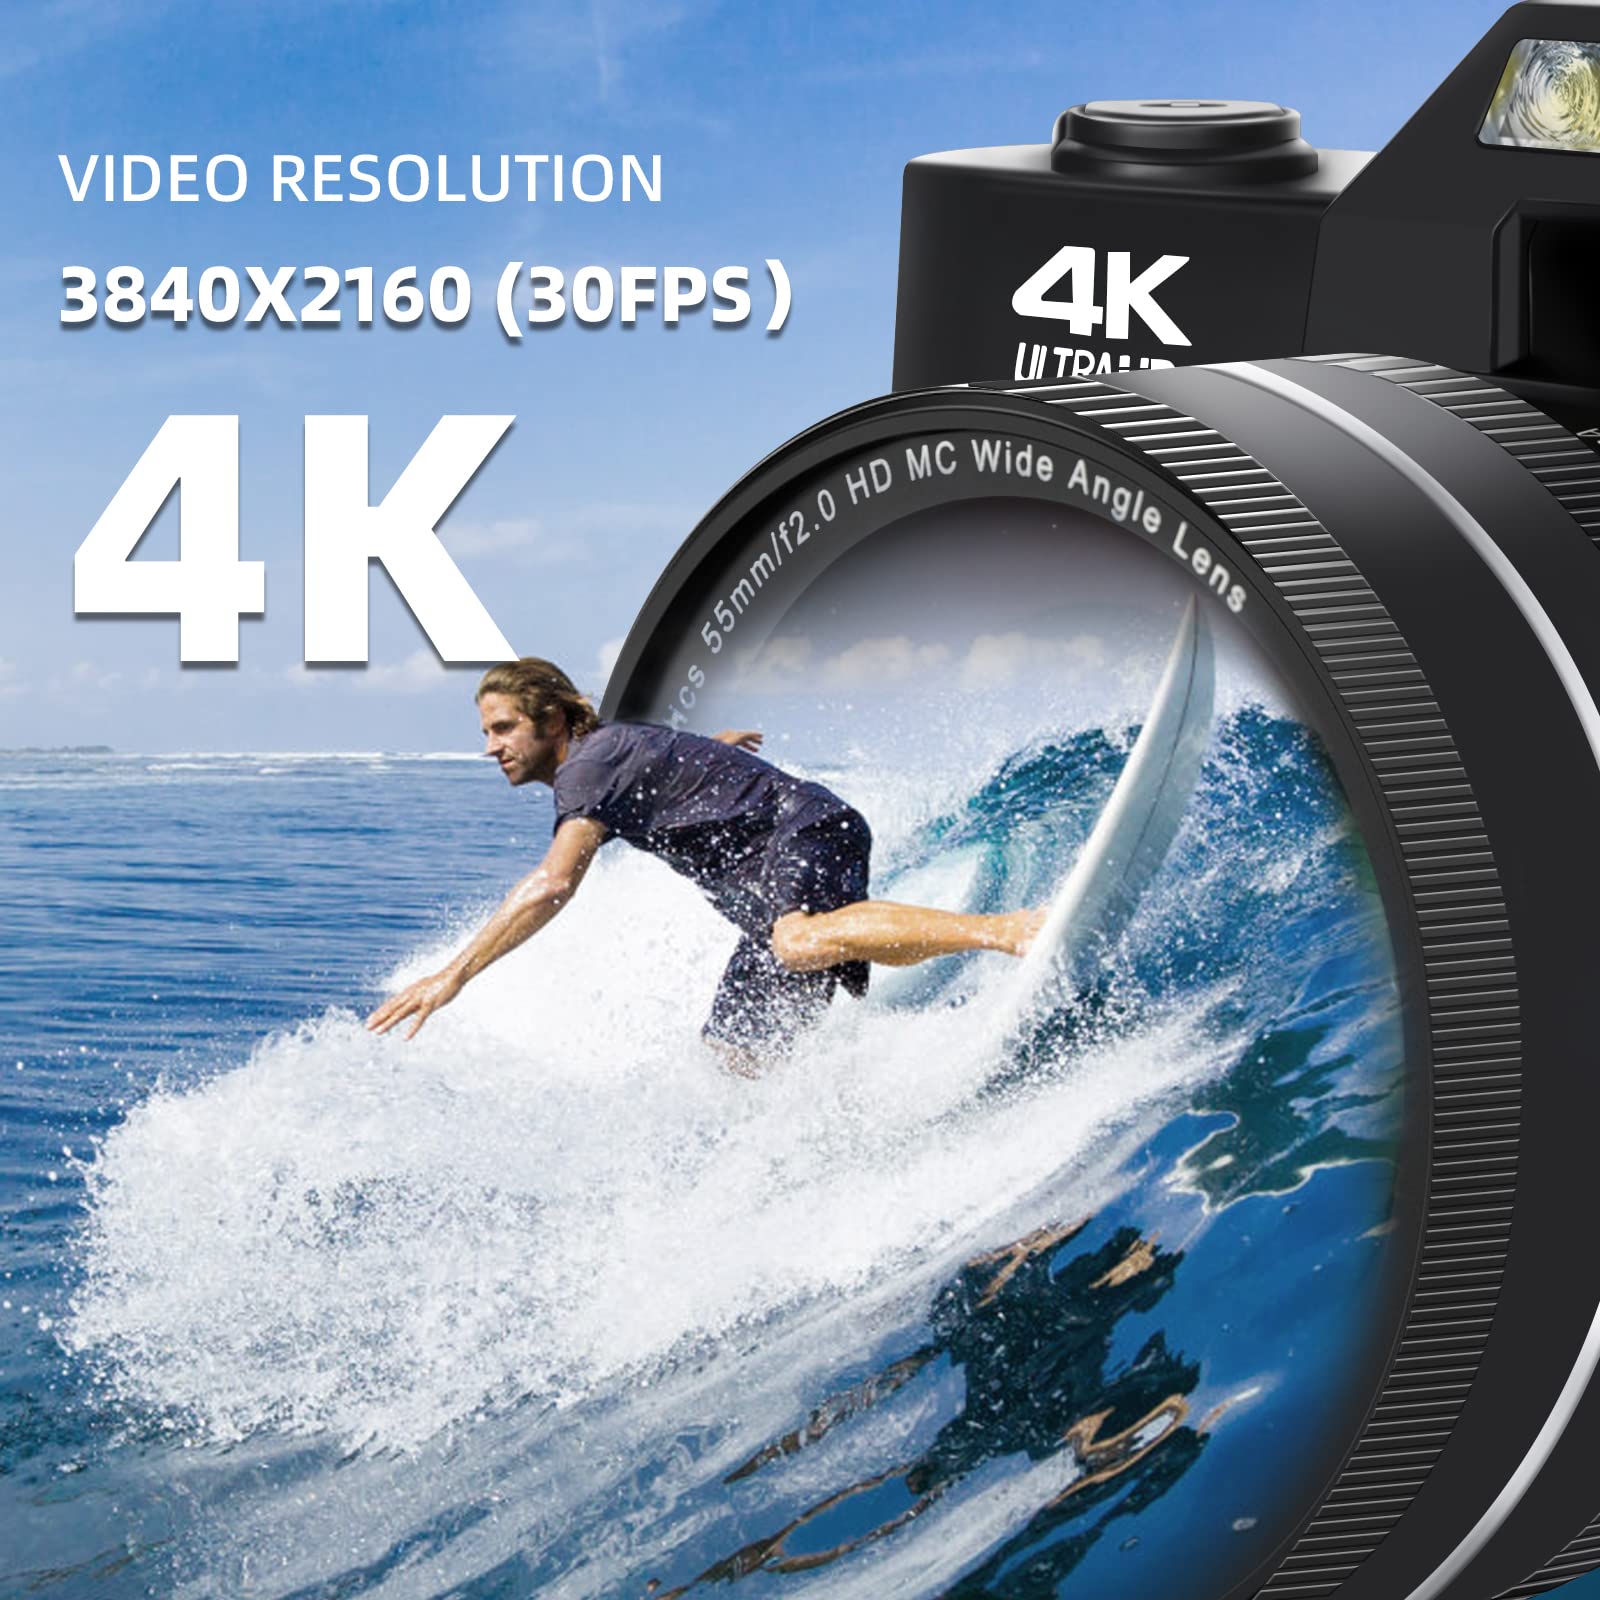 Digital Camera 4K Camcorder 48MP 3.0